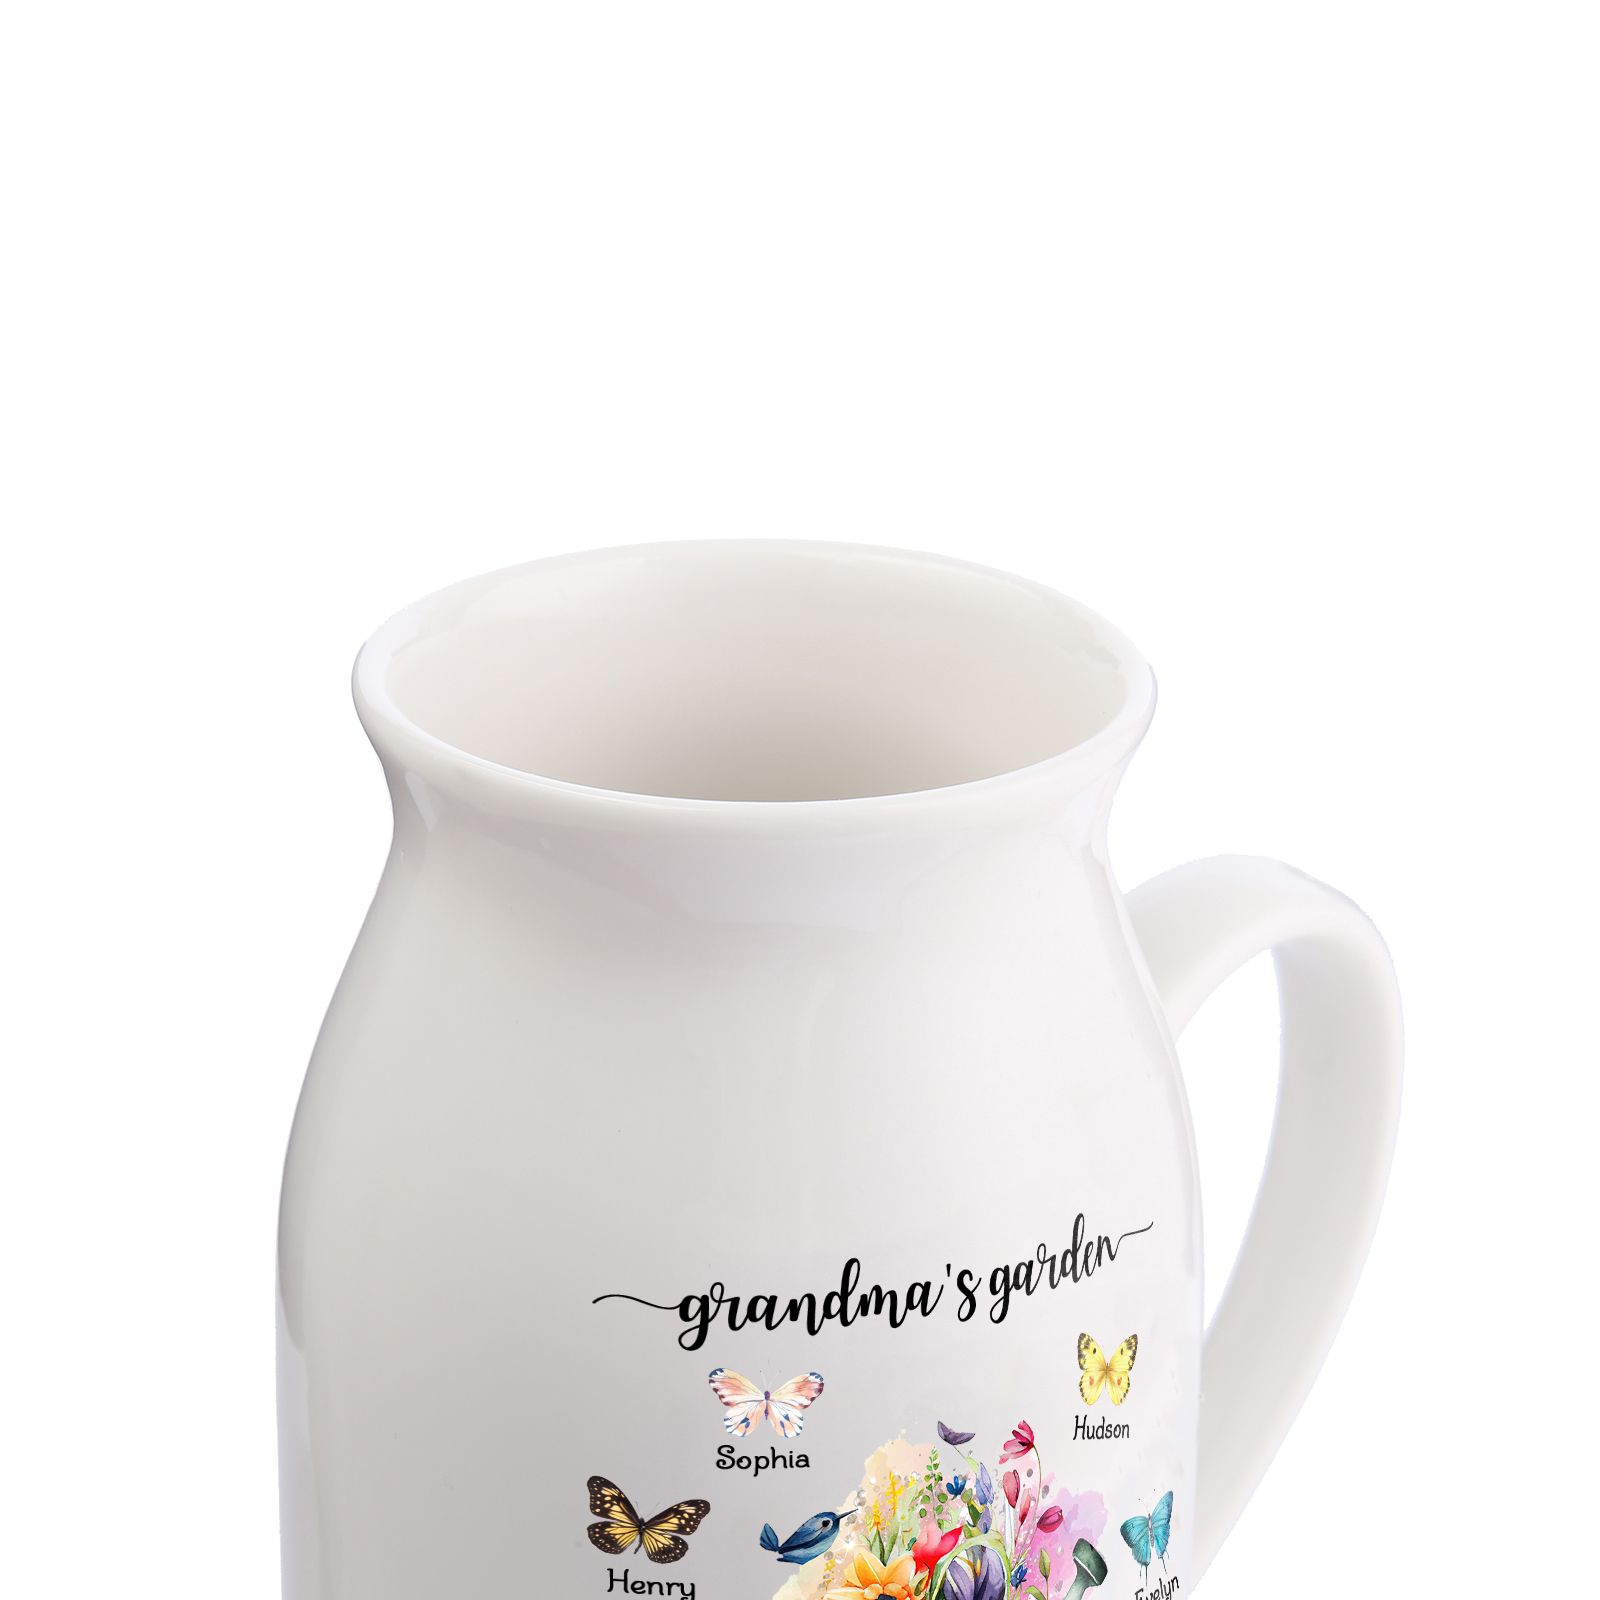 7 Names - Personalized Name "Grandma's Garden" Ceramic Vase as a Gift for Grandma